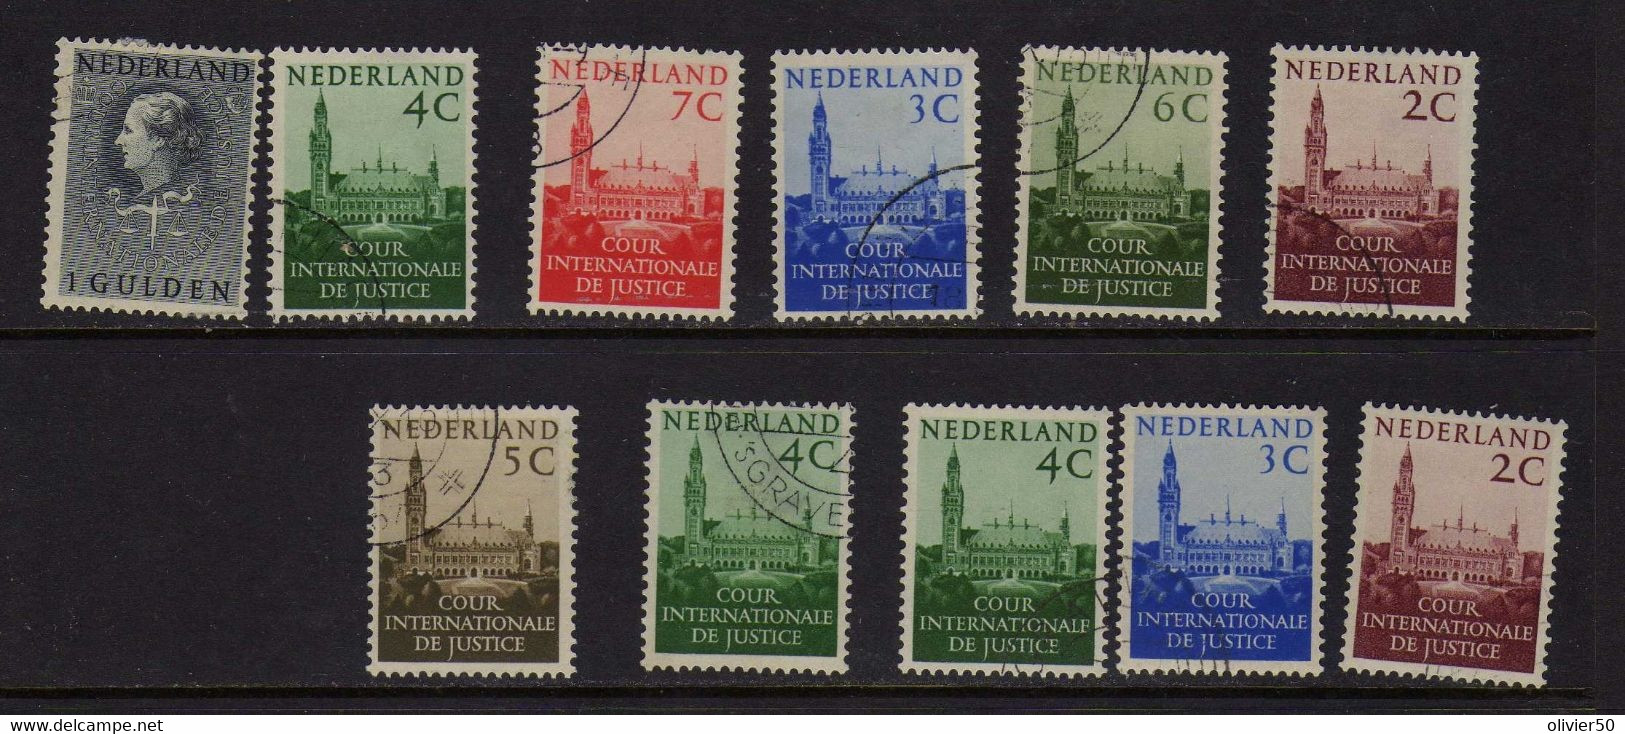 Pays-Bas (1951-58)  - Timbres De Service  Oblit - Dienstmarken